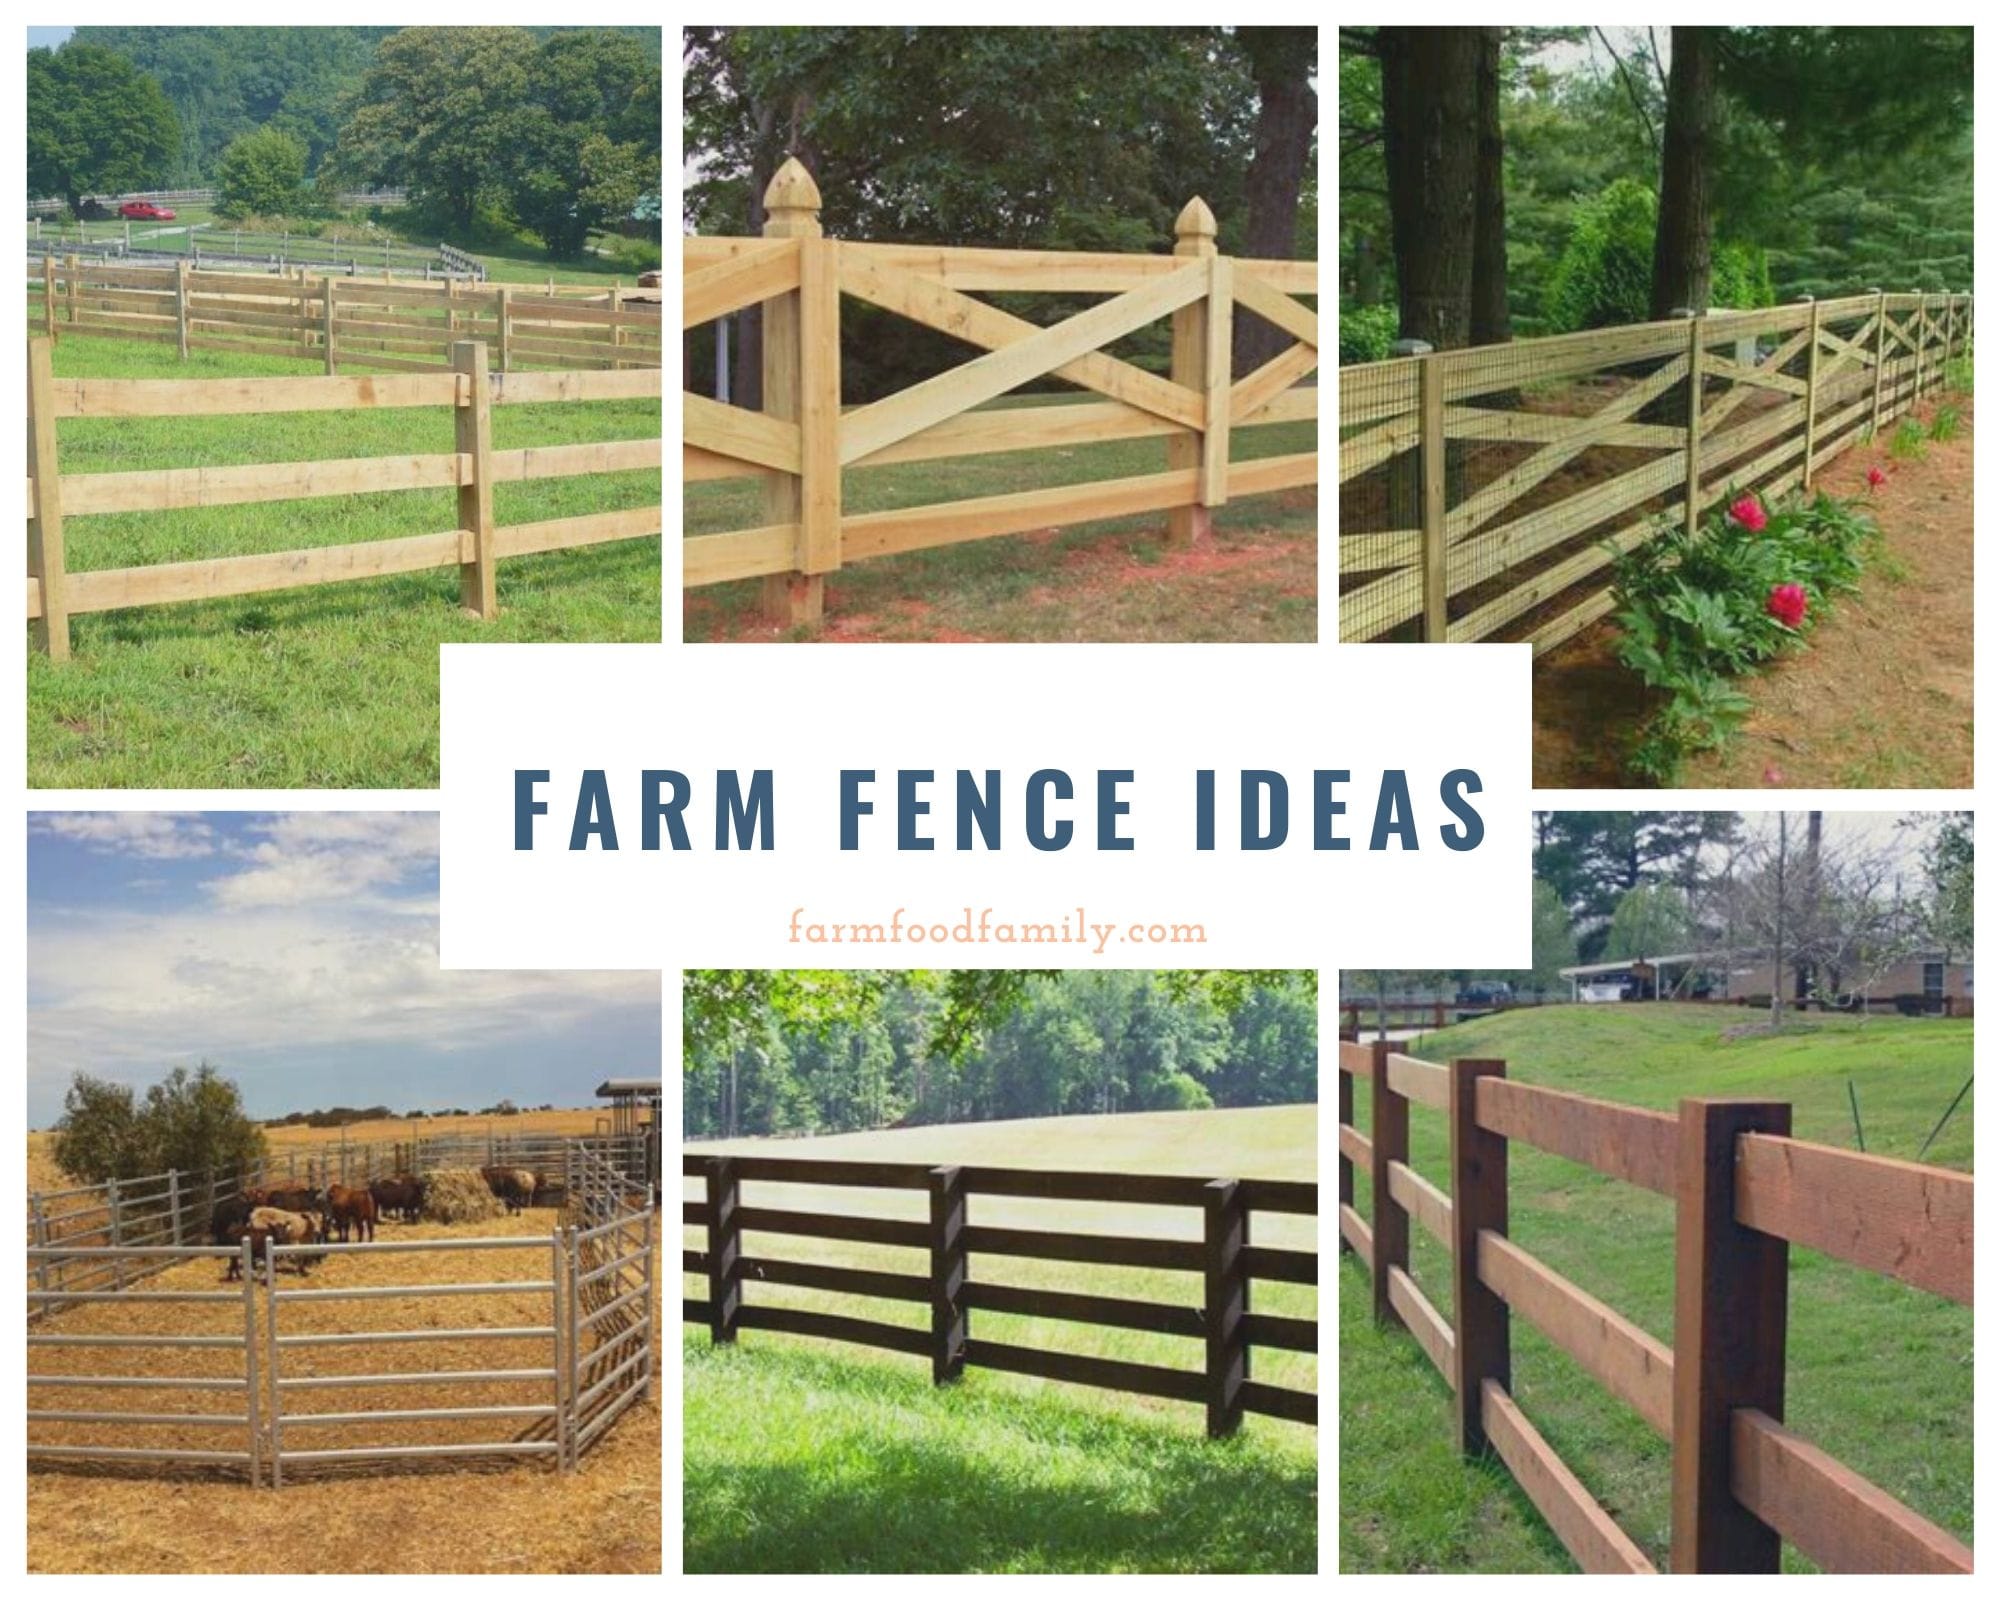 Farm fence ideas